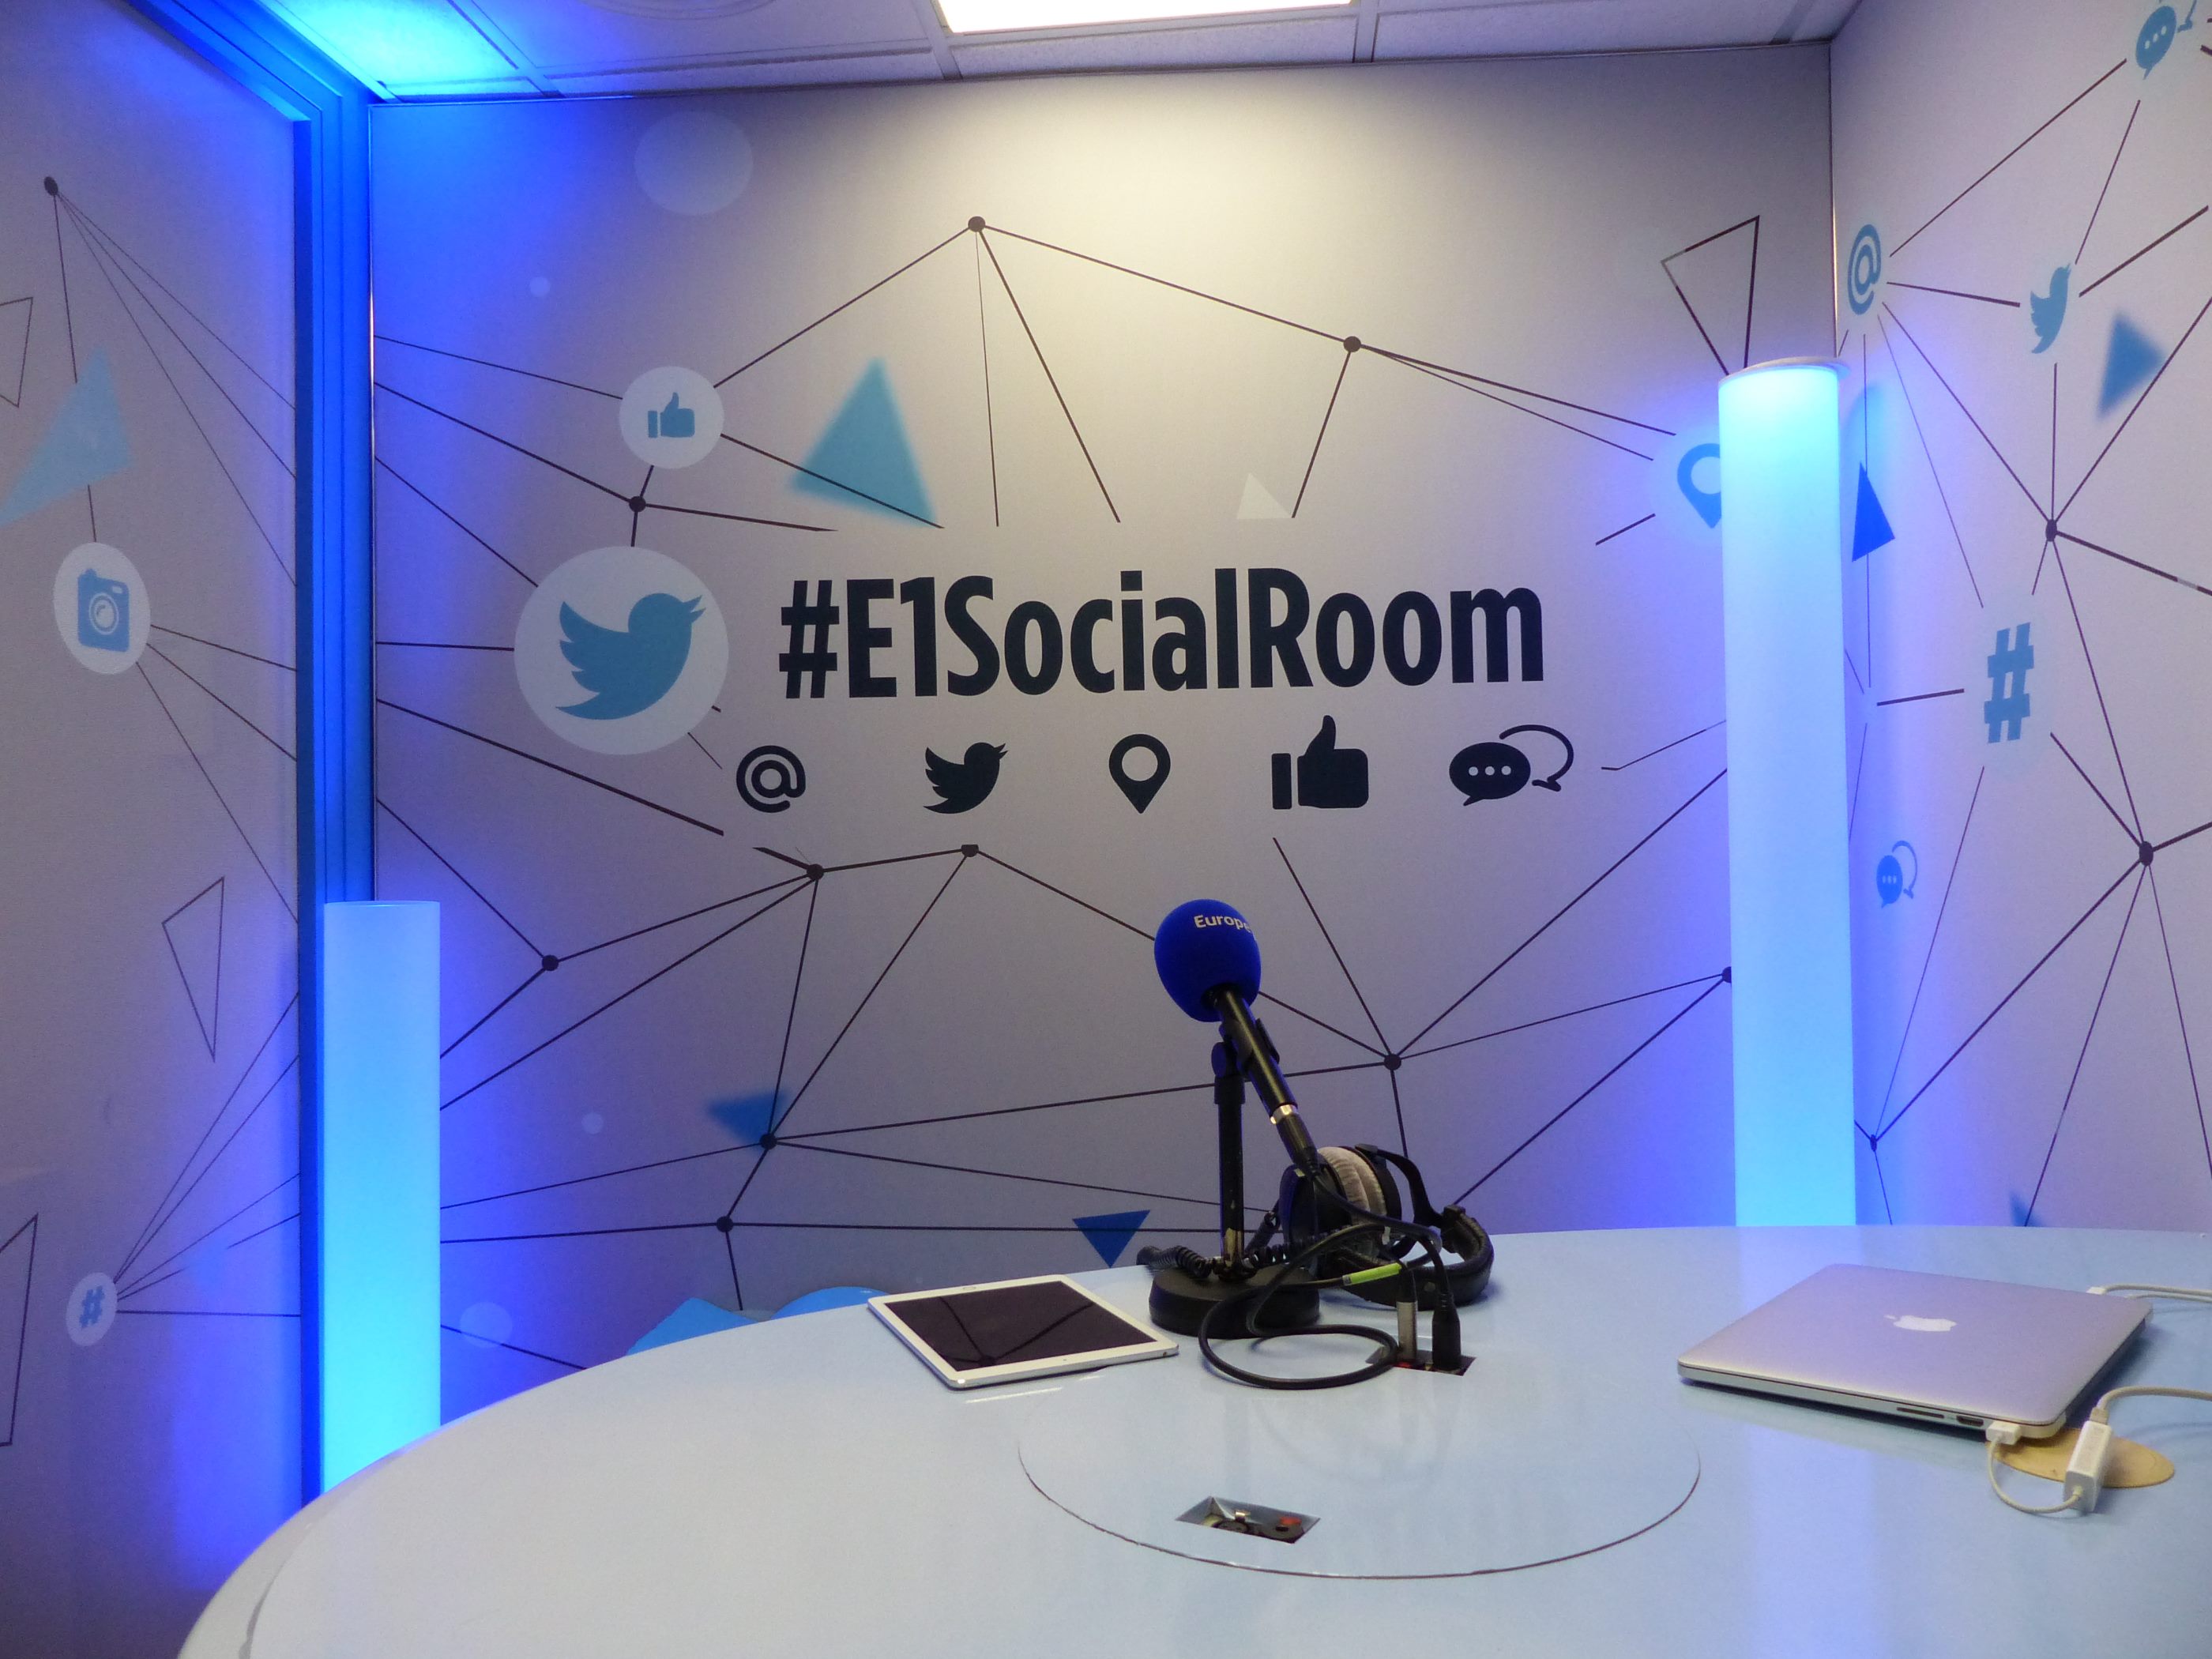 Les meilleurs moments de ces échanges dans cette Social Room seront disponibles en vidéo sur Europe1.fr